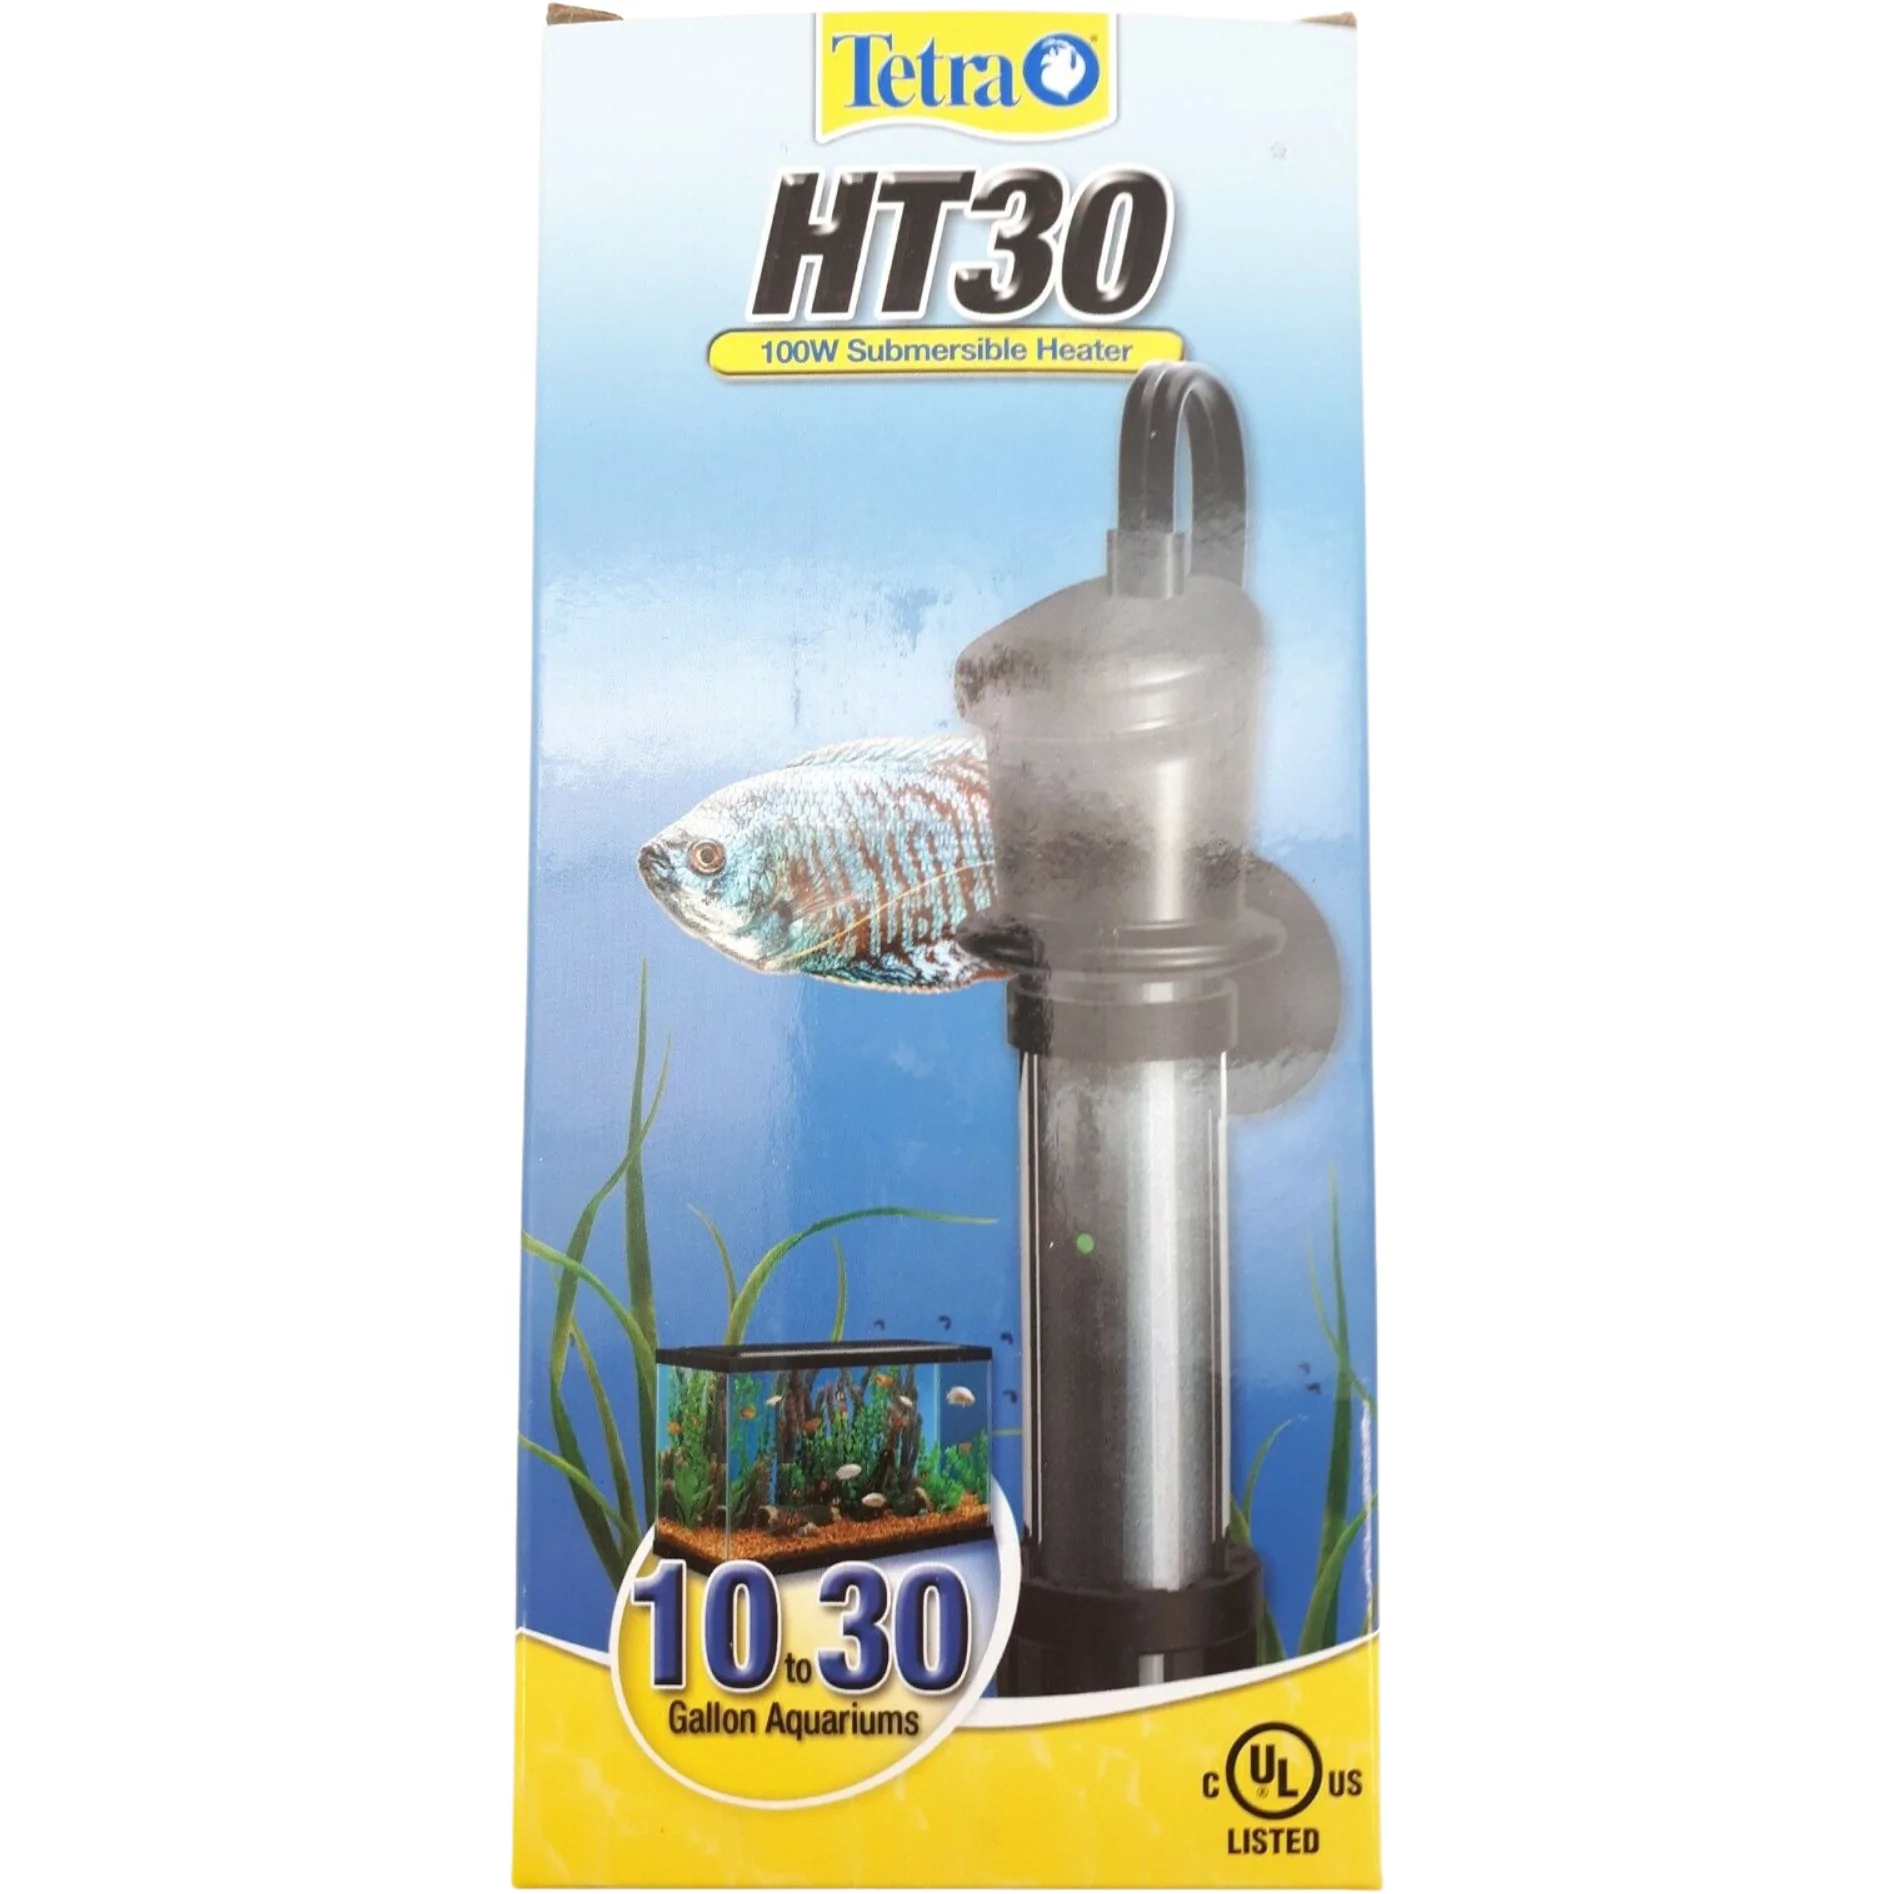 Tetra Submersible Aquarium Heater / HT30 100W Heater / 10 to 30 Gal Aquarium **DEALS**